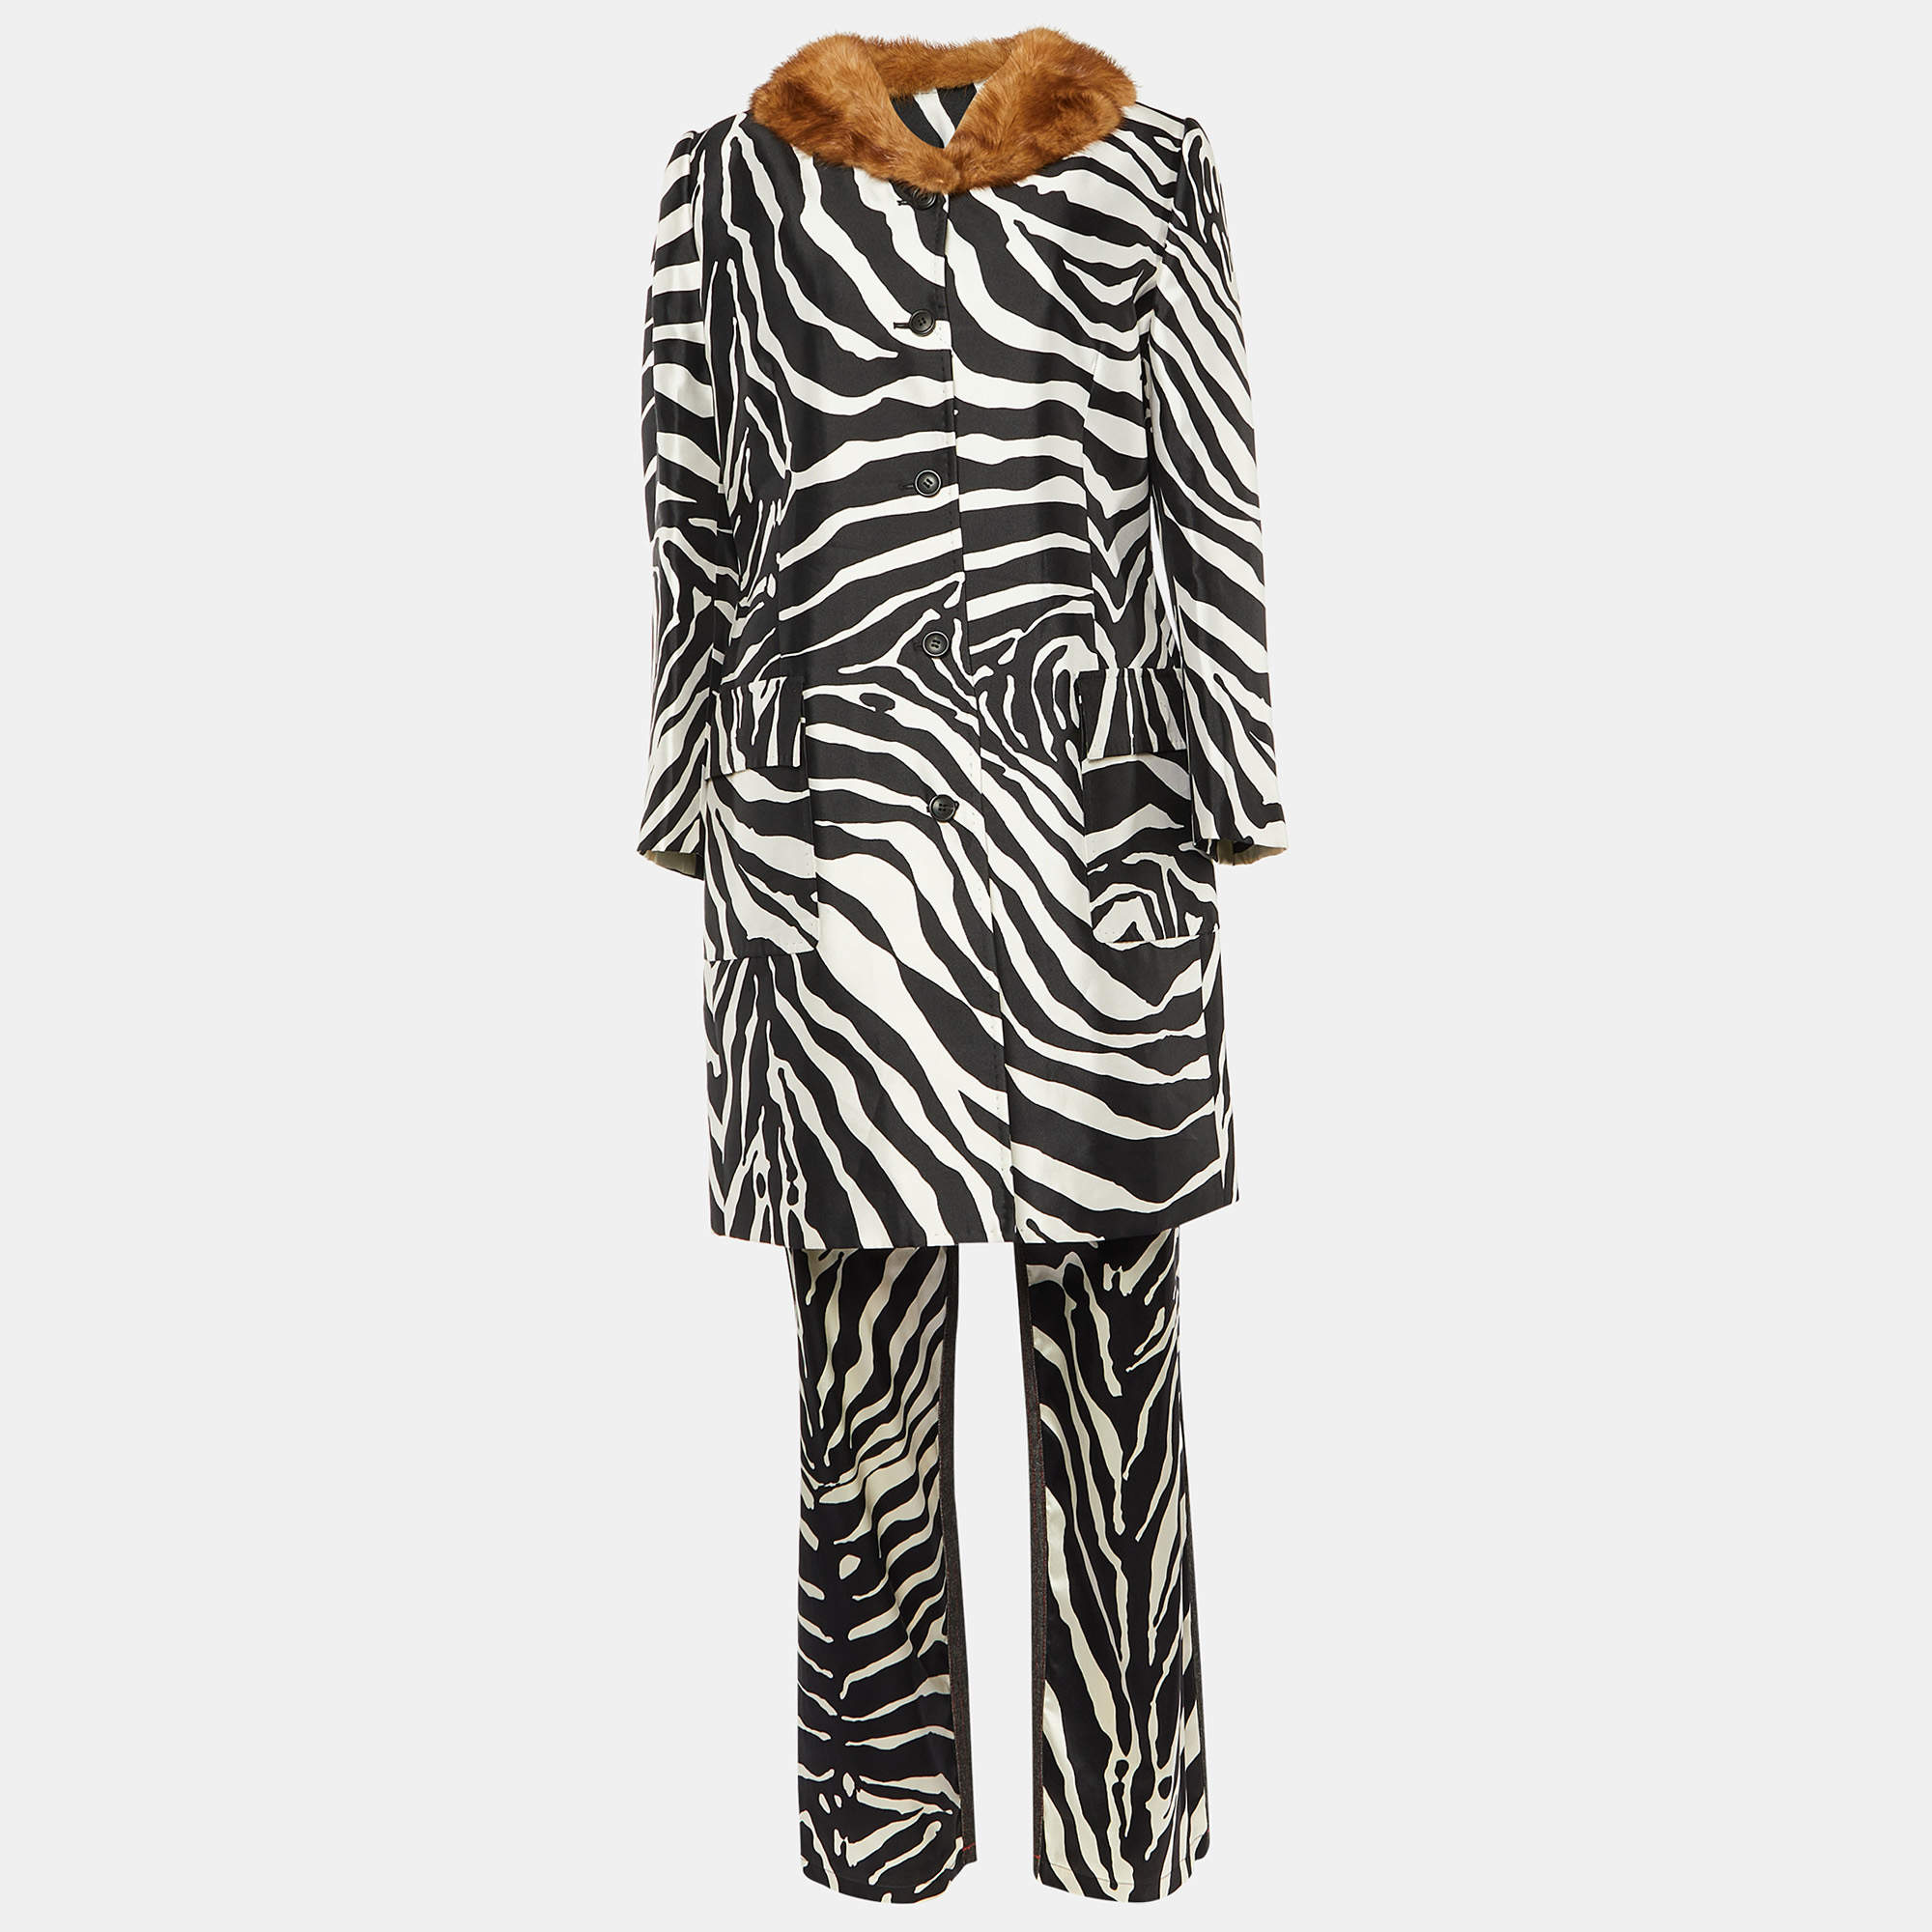 Dolce & Gabbana Black & White Zebra Printed Silk Satin Coat & Pants L/S